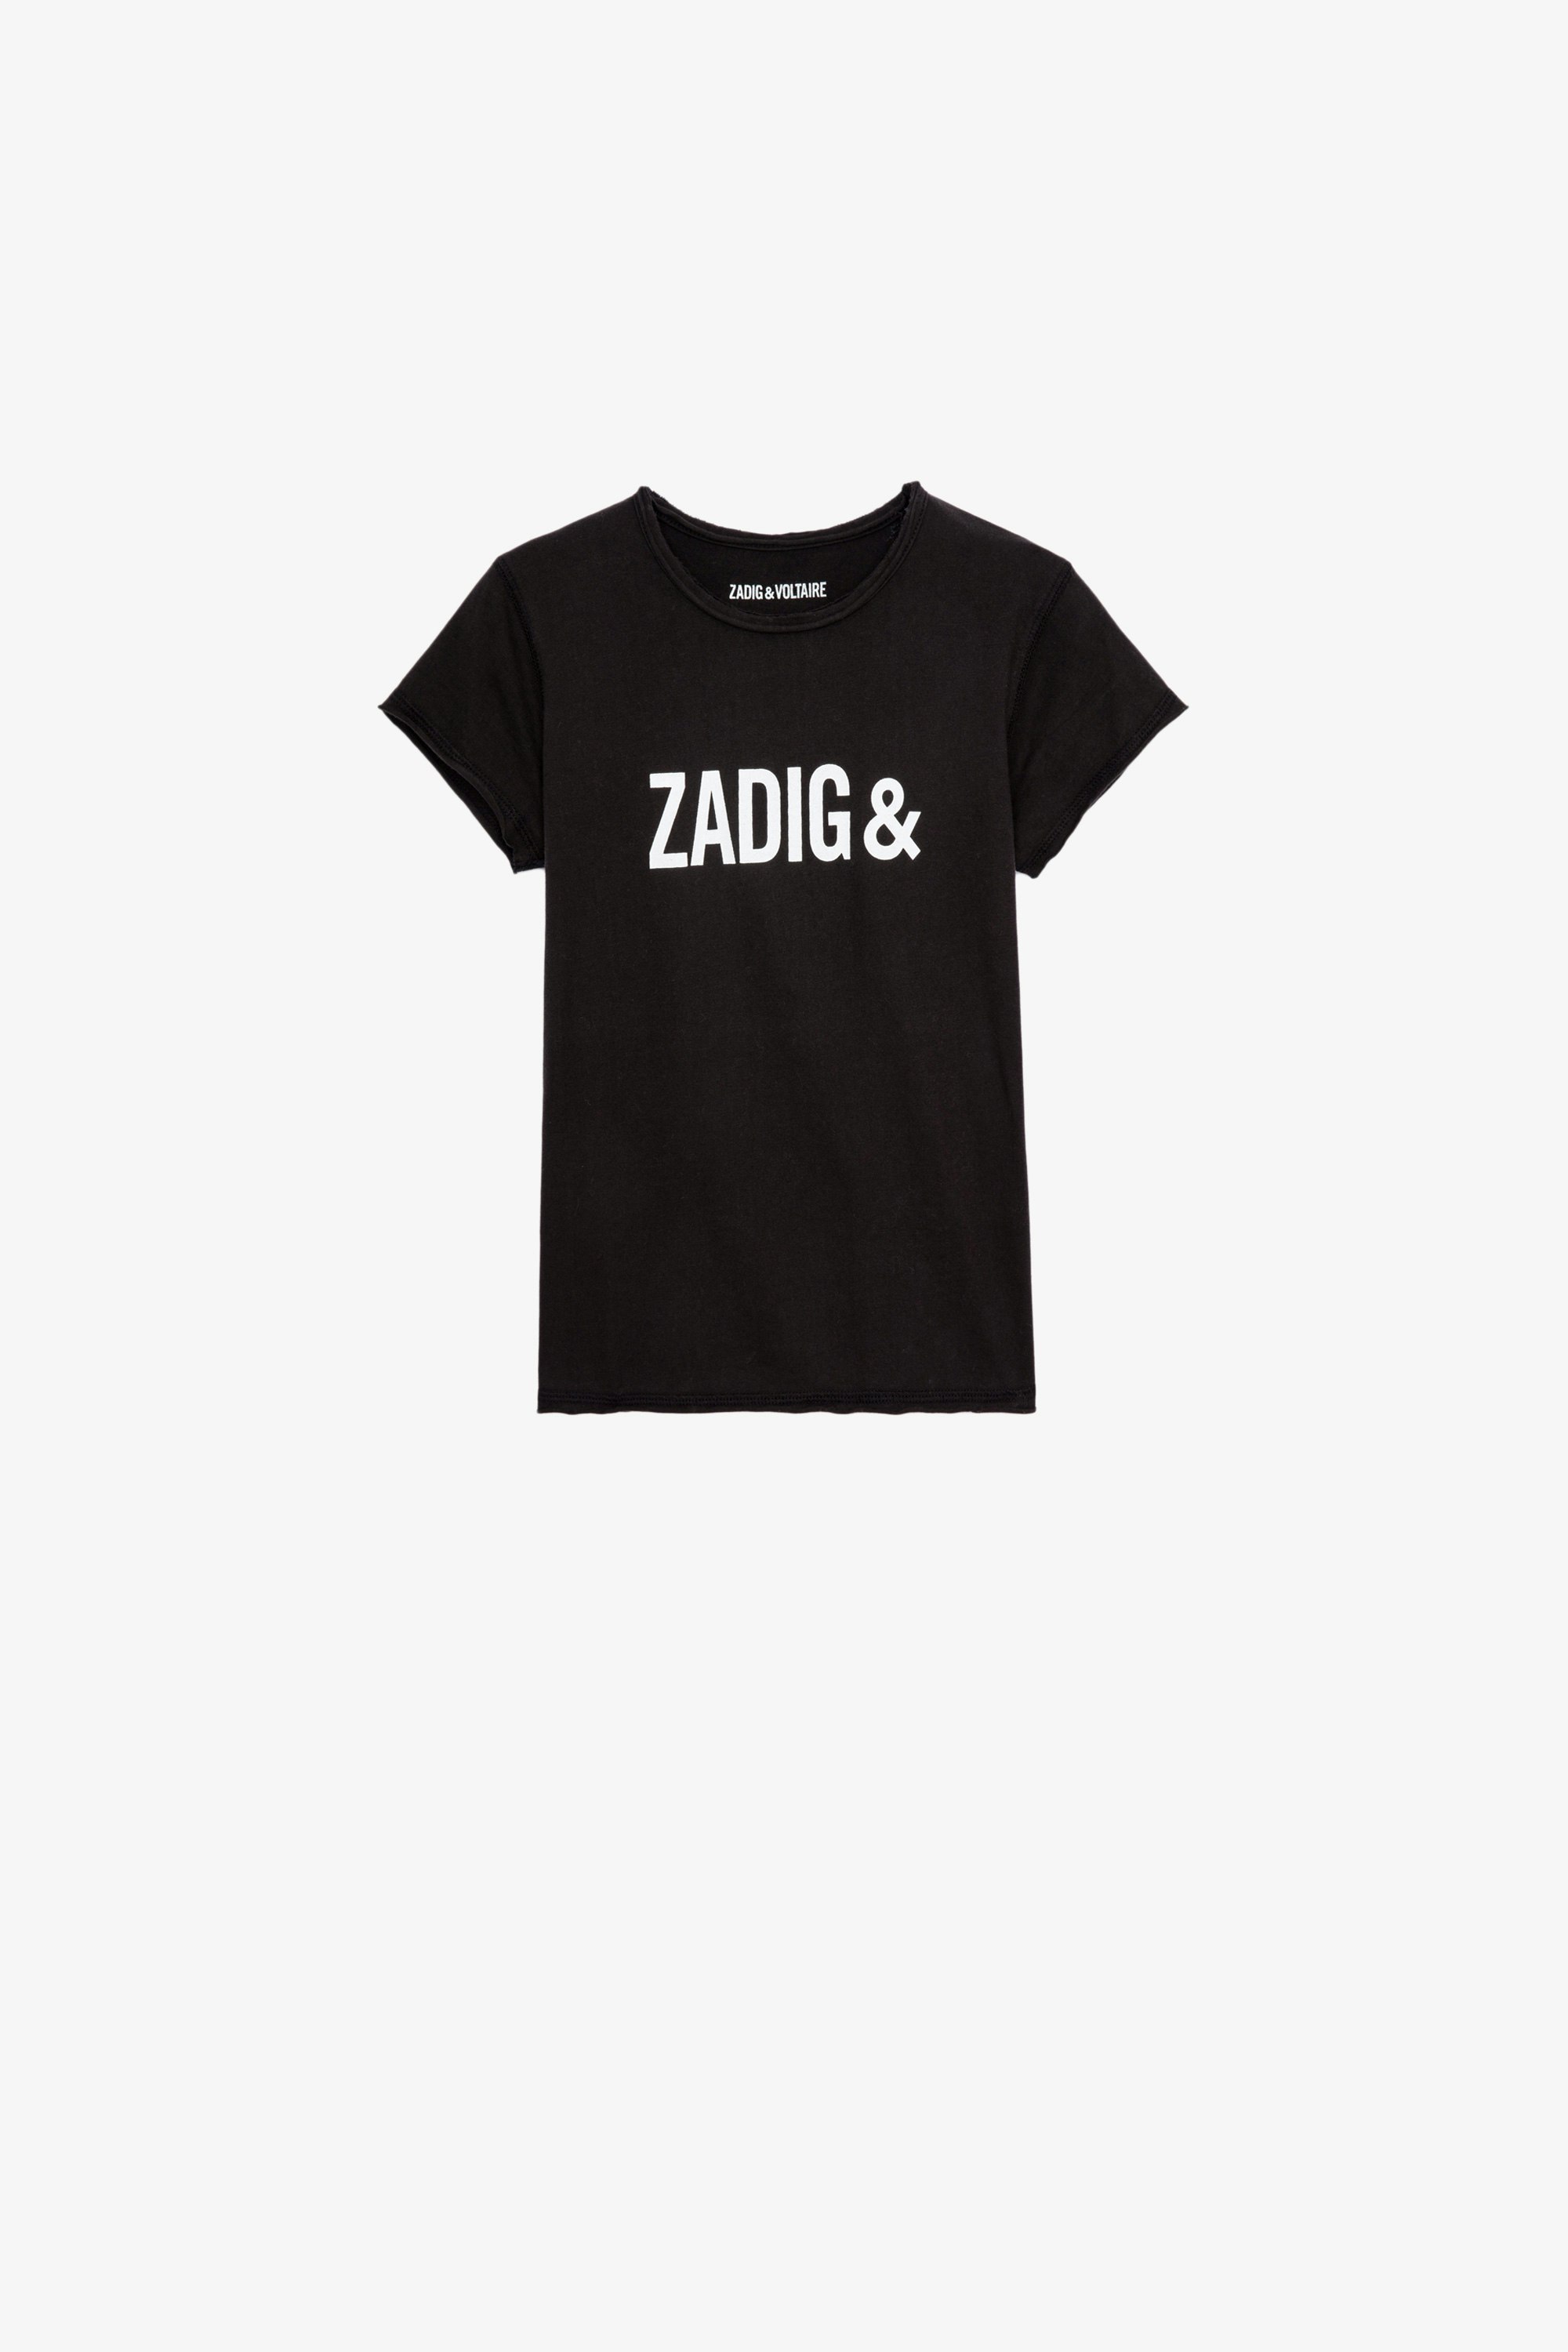 Kinder-T-Shirt Amber Kinder-T-Shirt mit kurzen Ärmeln aus schwarzer Baumwolle mit Signature-Print 